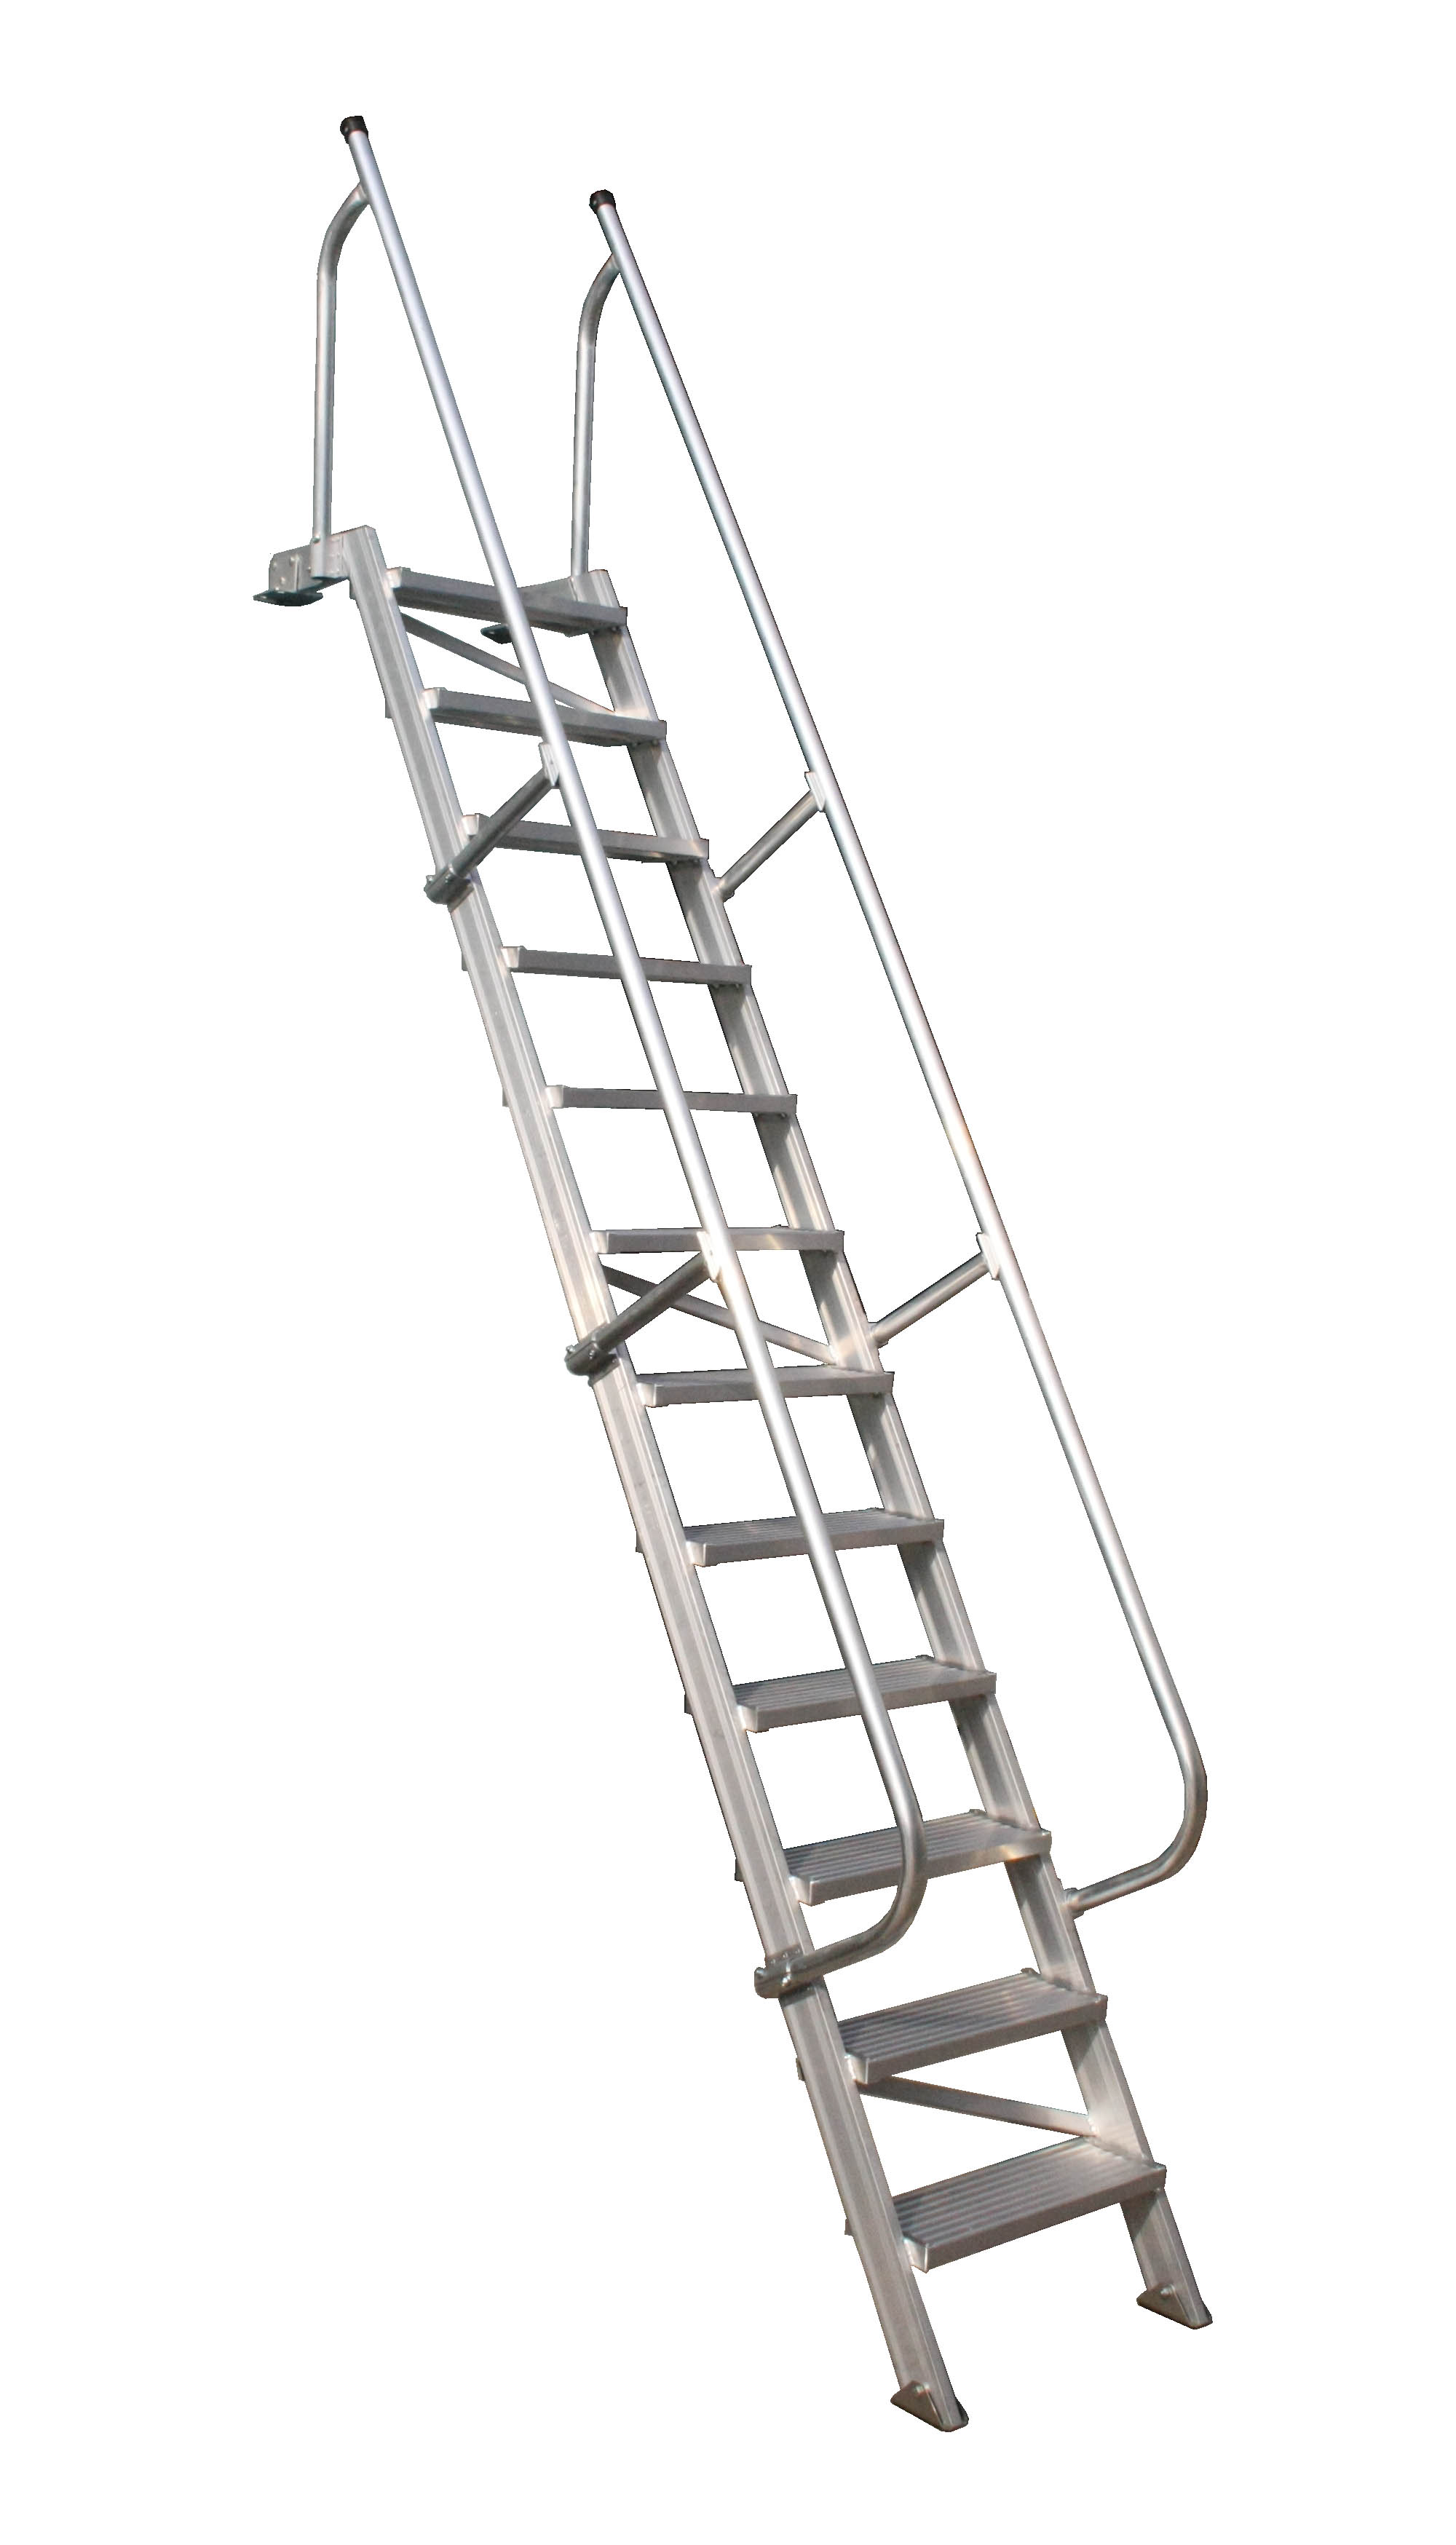 Main-Full Bulwark ladder pic.jpg